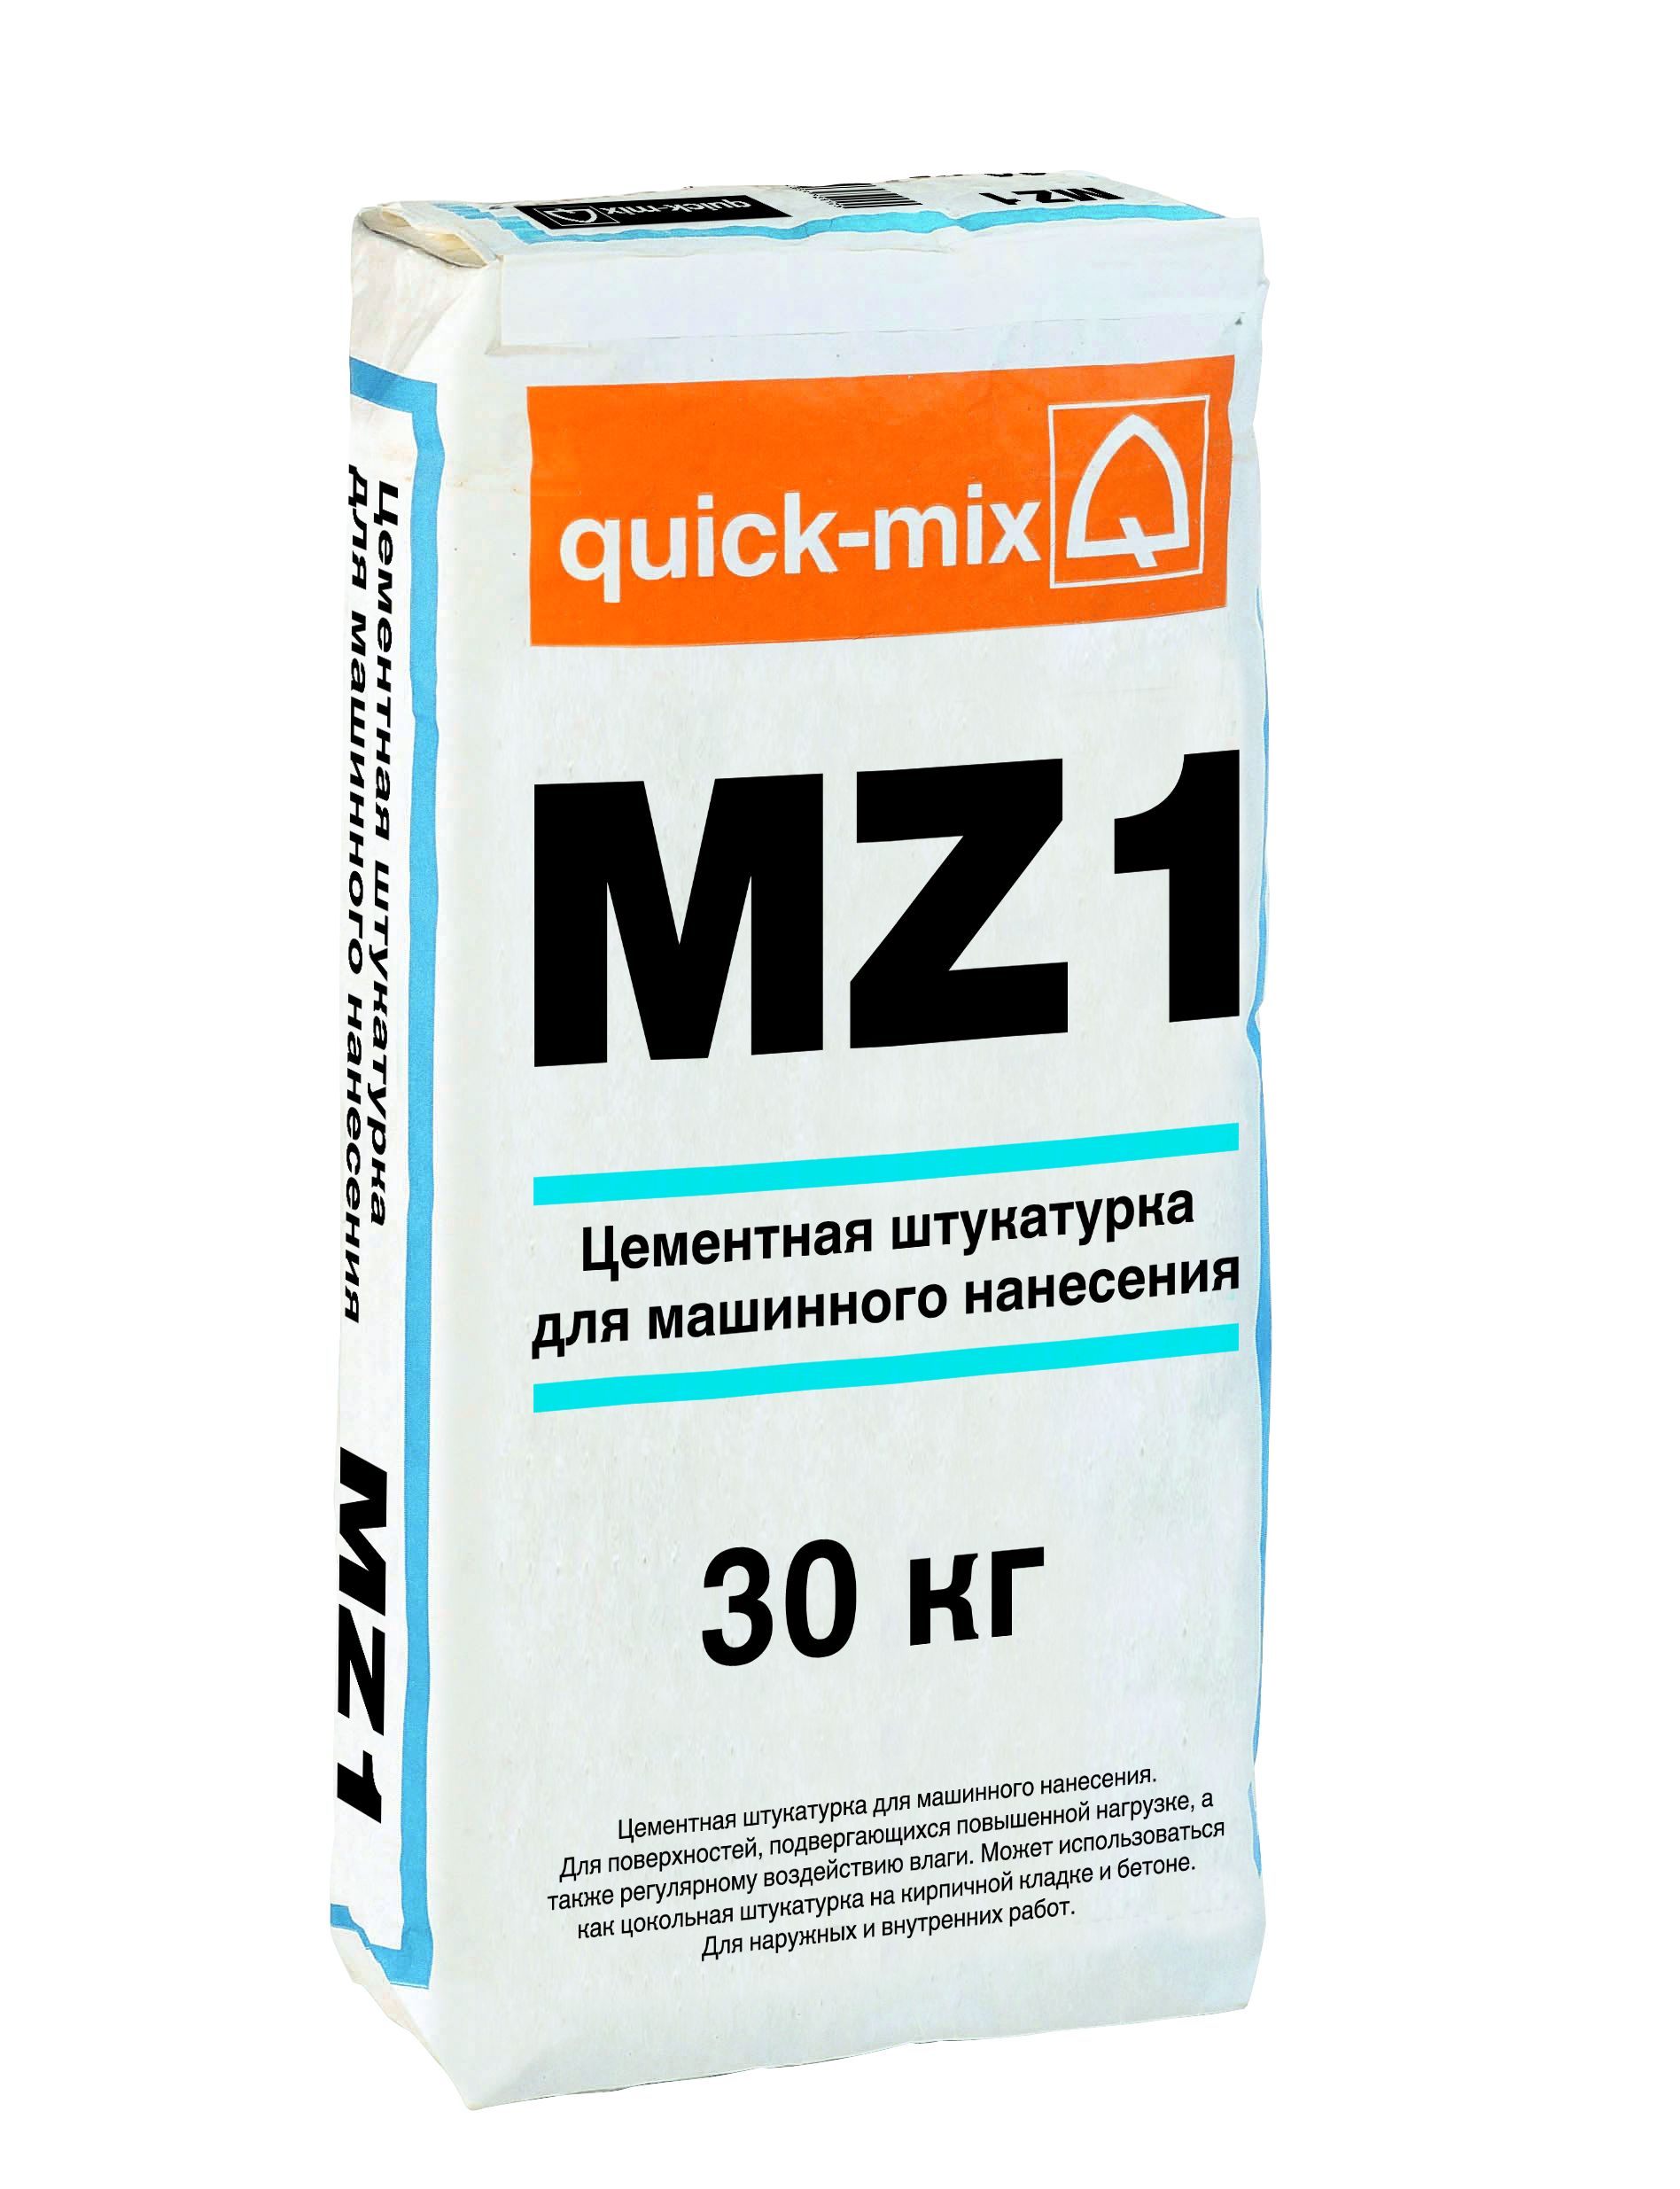 Штукатурка для наружных работ по кирпичу. Штукатурка quick-Mix MK 3 H, 30 кг. Quick-Mix MZ 4. Штукатурка цементная машинного нанесения. Штукатурка quick-Mix MZ 1 H, 30 кг.